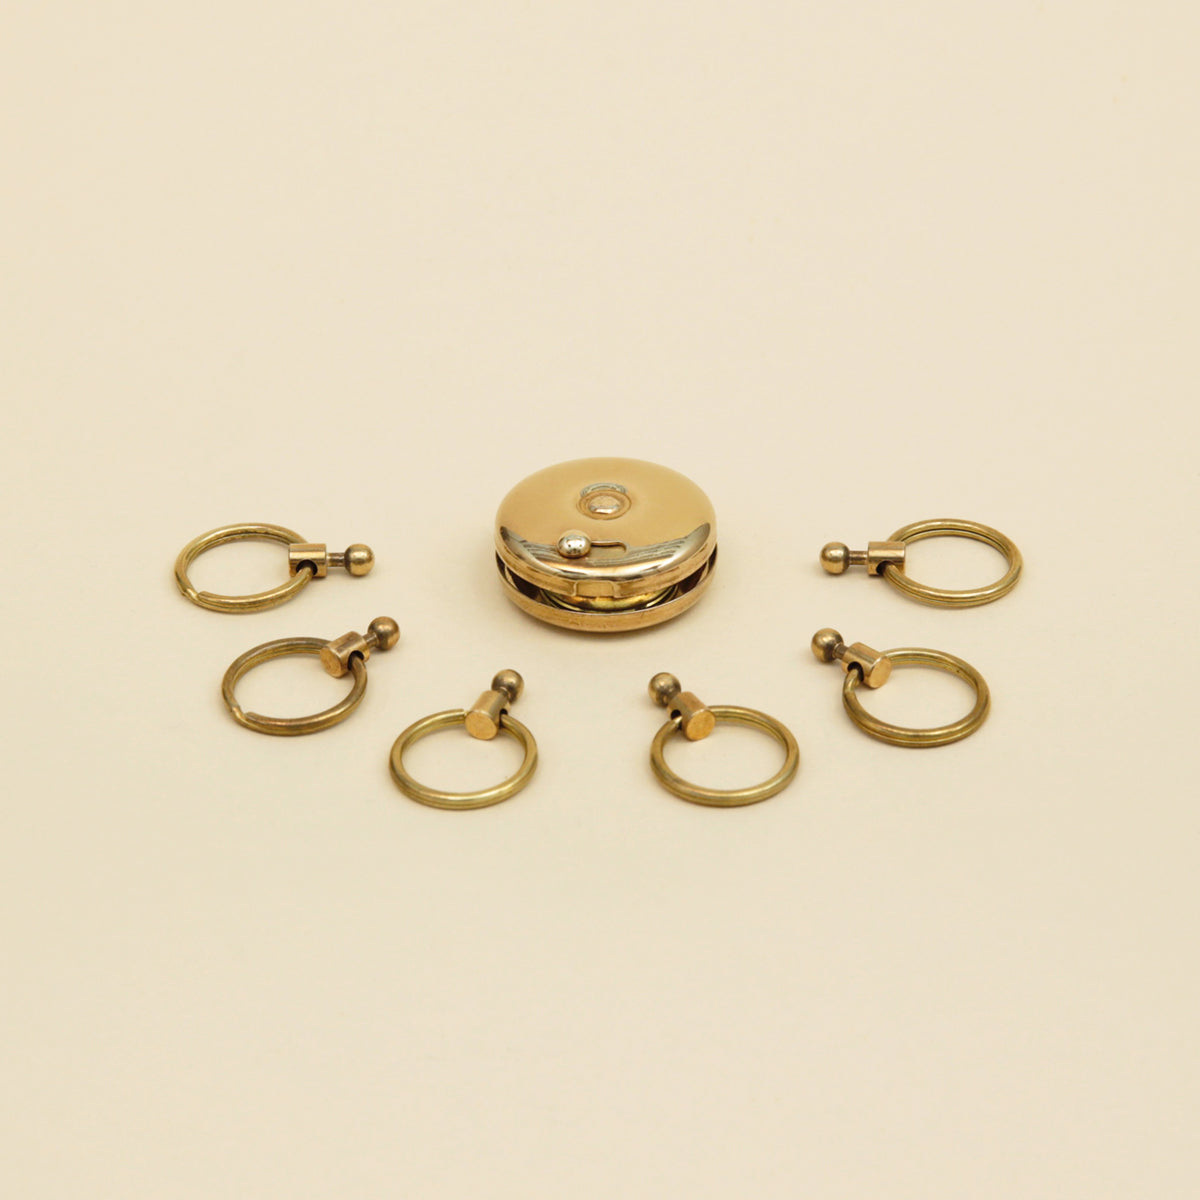 Brass Octopus Key Ring